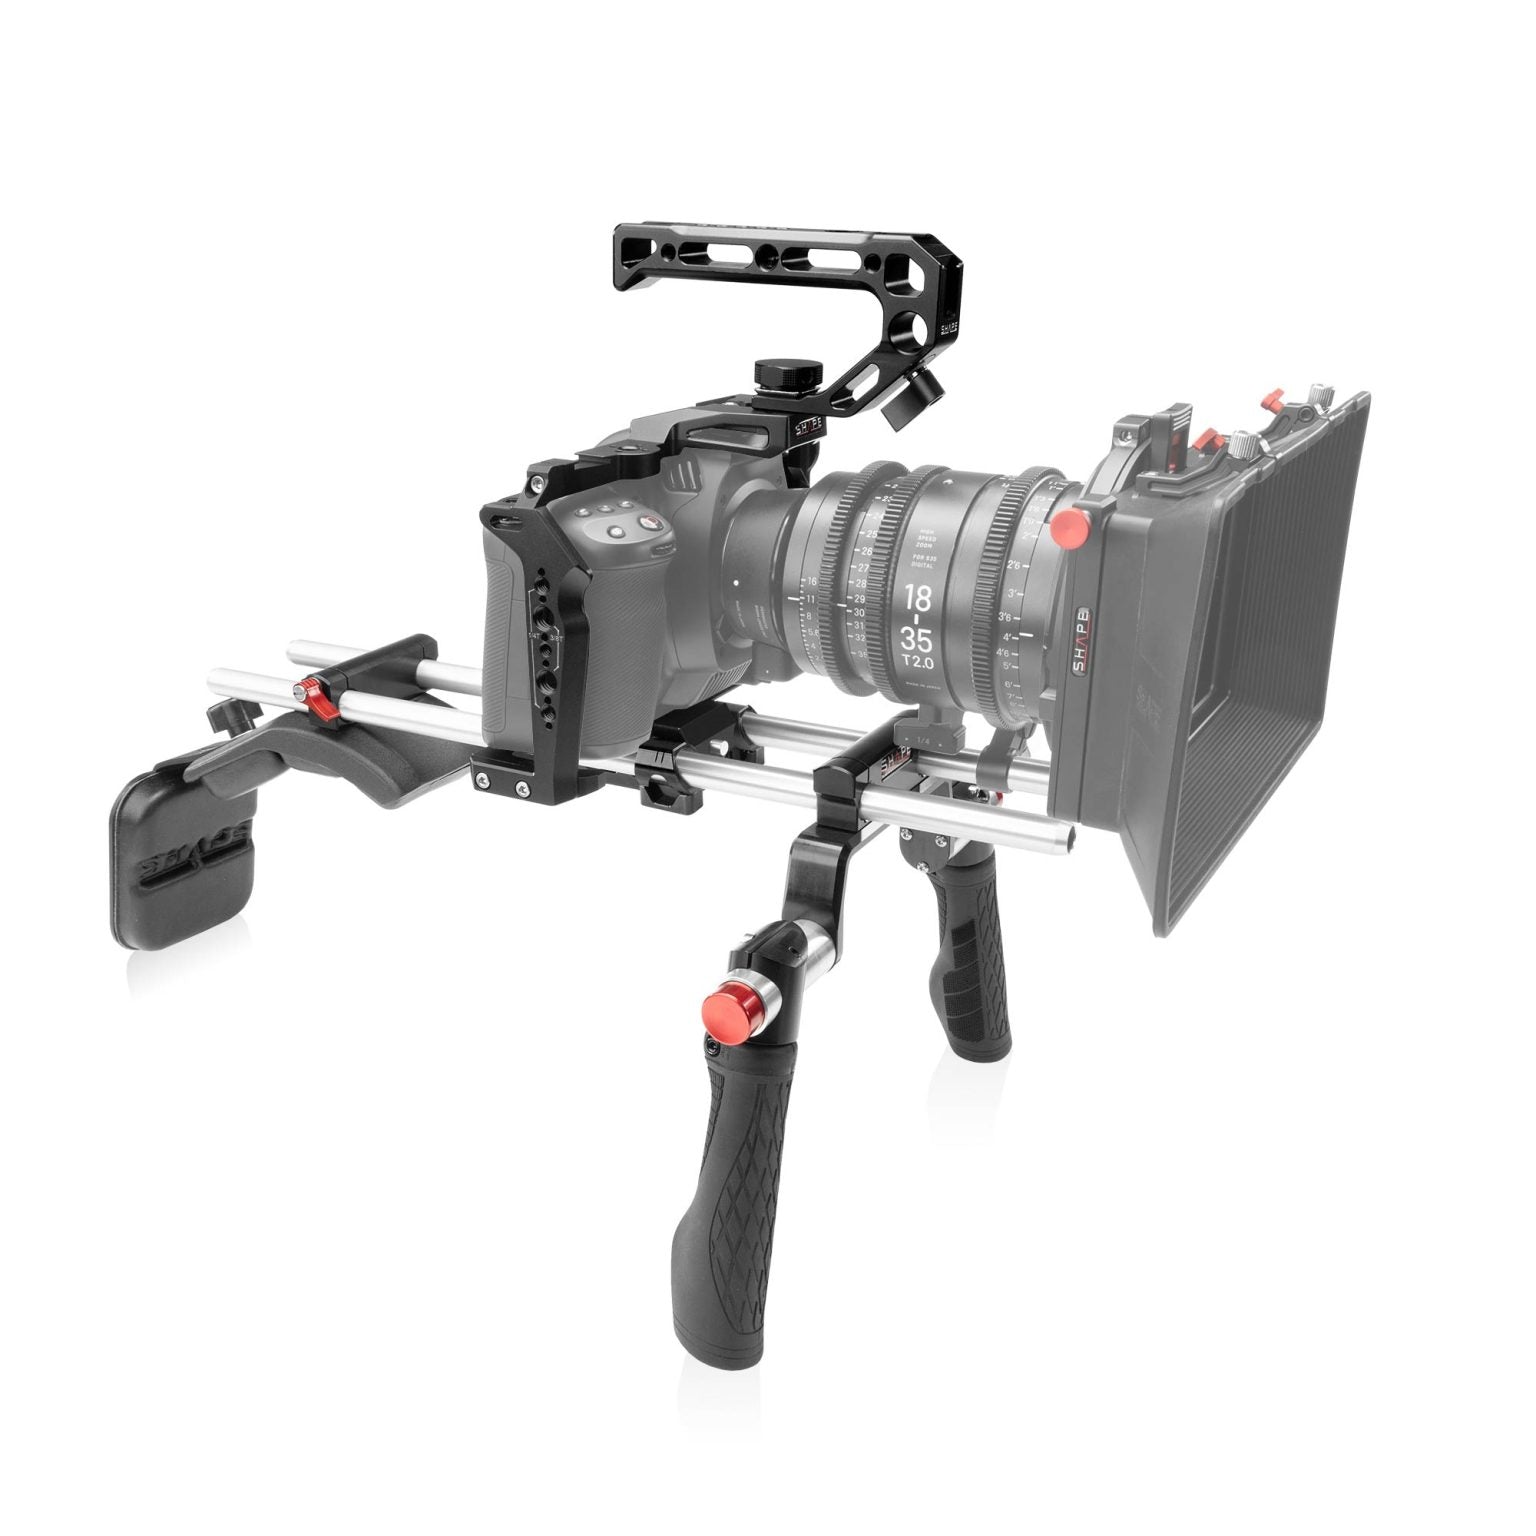 Épaule SHAPE pour Blackmagic Cinema Camera 6K/6K Pro/6K G2